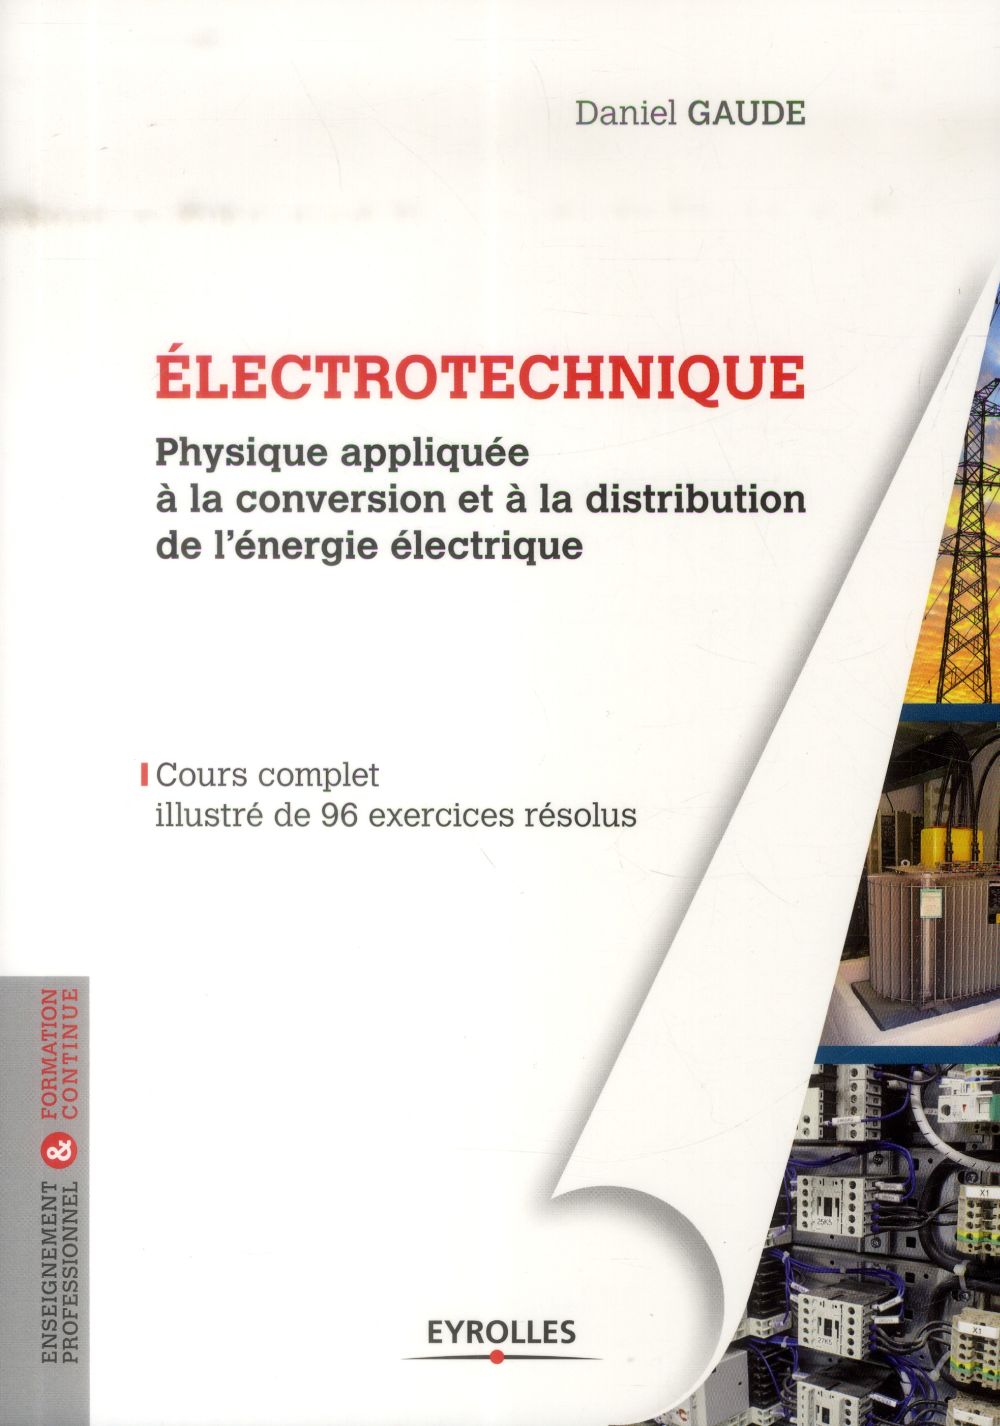 ELECTROTECHNIQUE 1 - PHYSIQUE APPLIQUEE A LA CONVERSION ET A LA DISTRIBUTION DE L'ENERGIE ELECTRIQUE